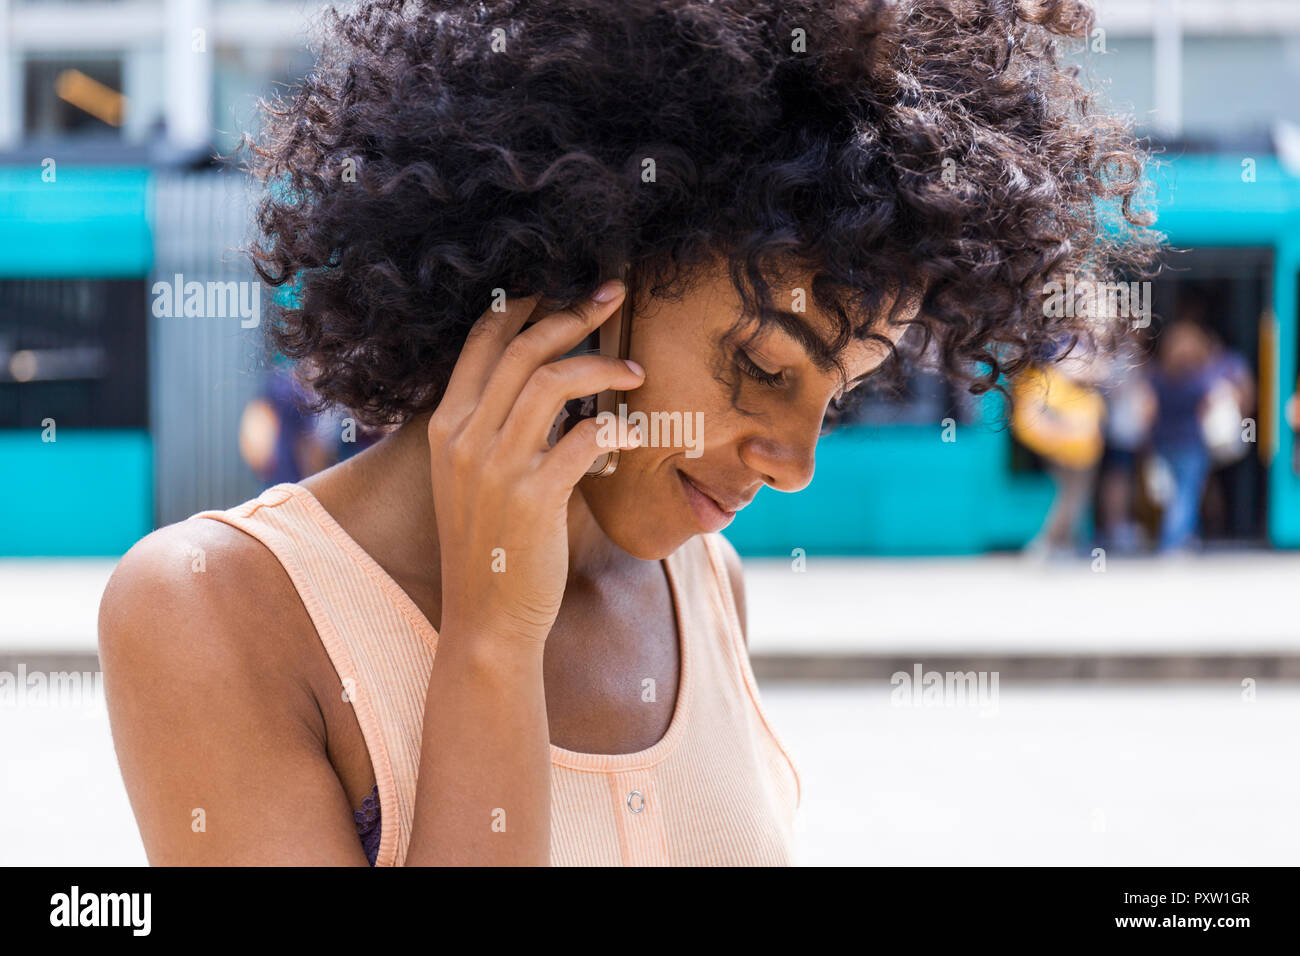 Deutschland, Frankfurt, Portrait von lächelnden jungen Frau mit lockigem Haar auf dem Telefon Stockfoto